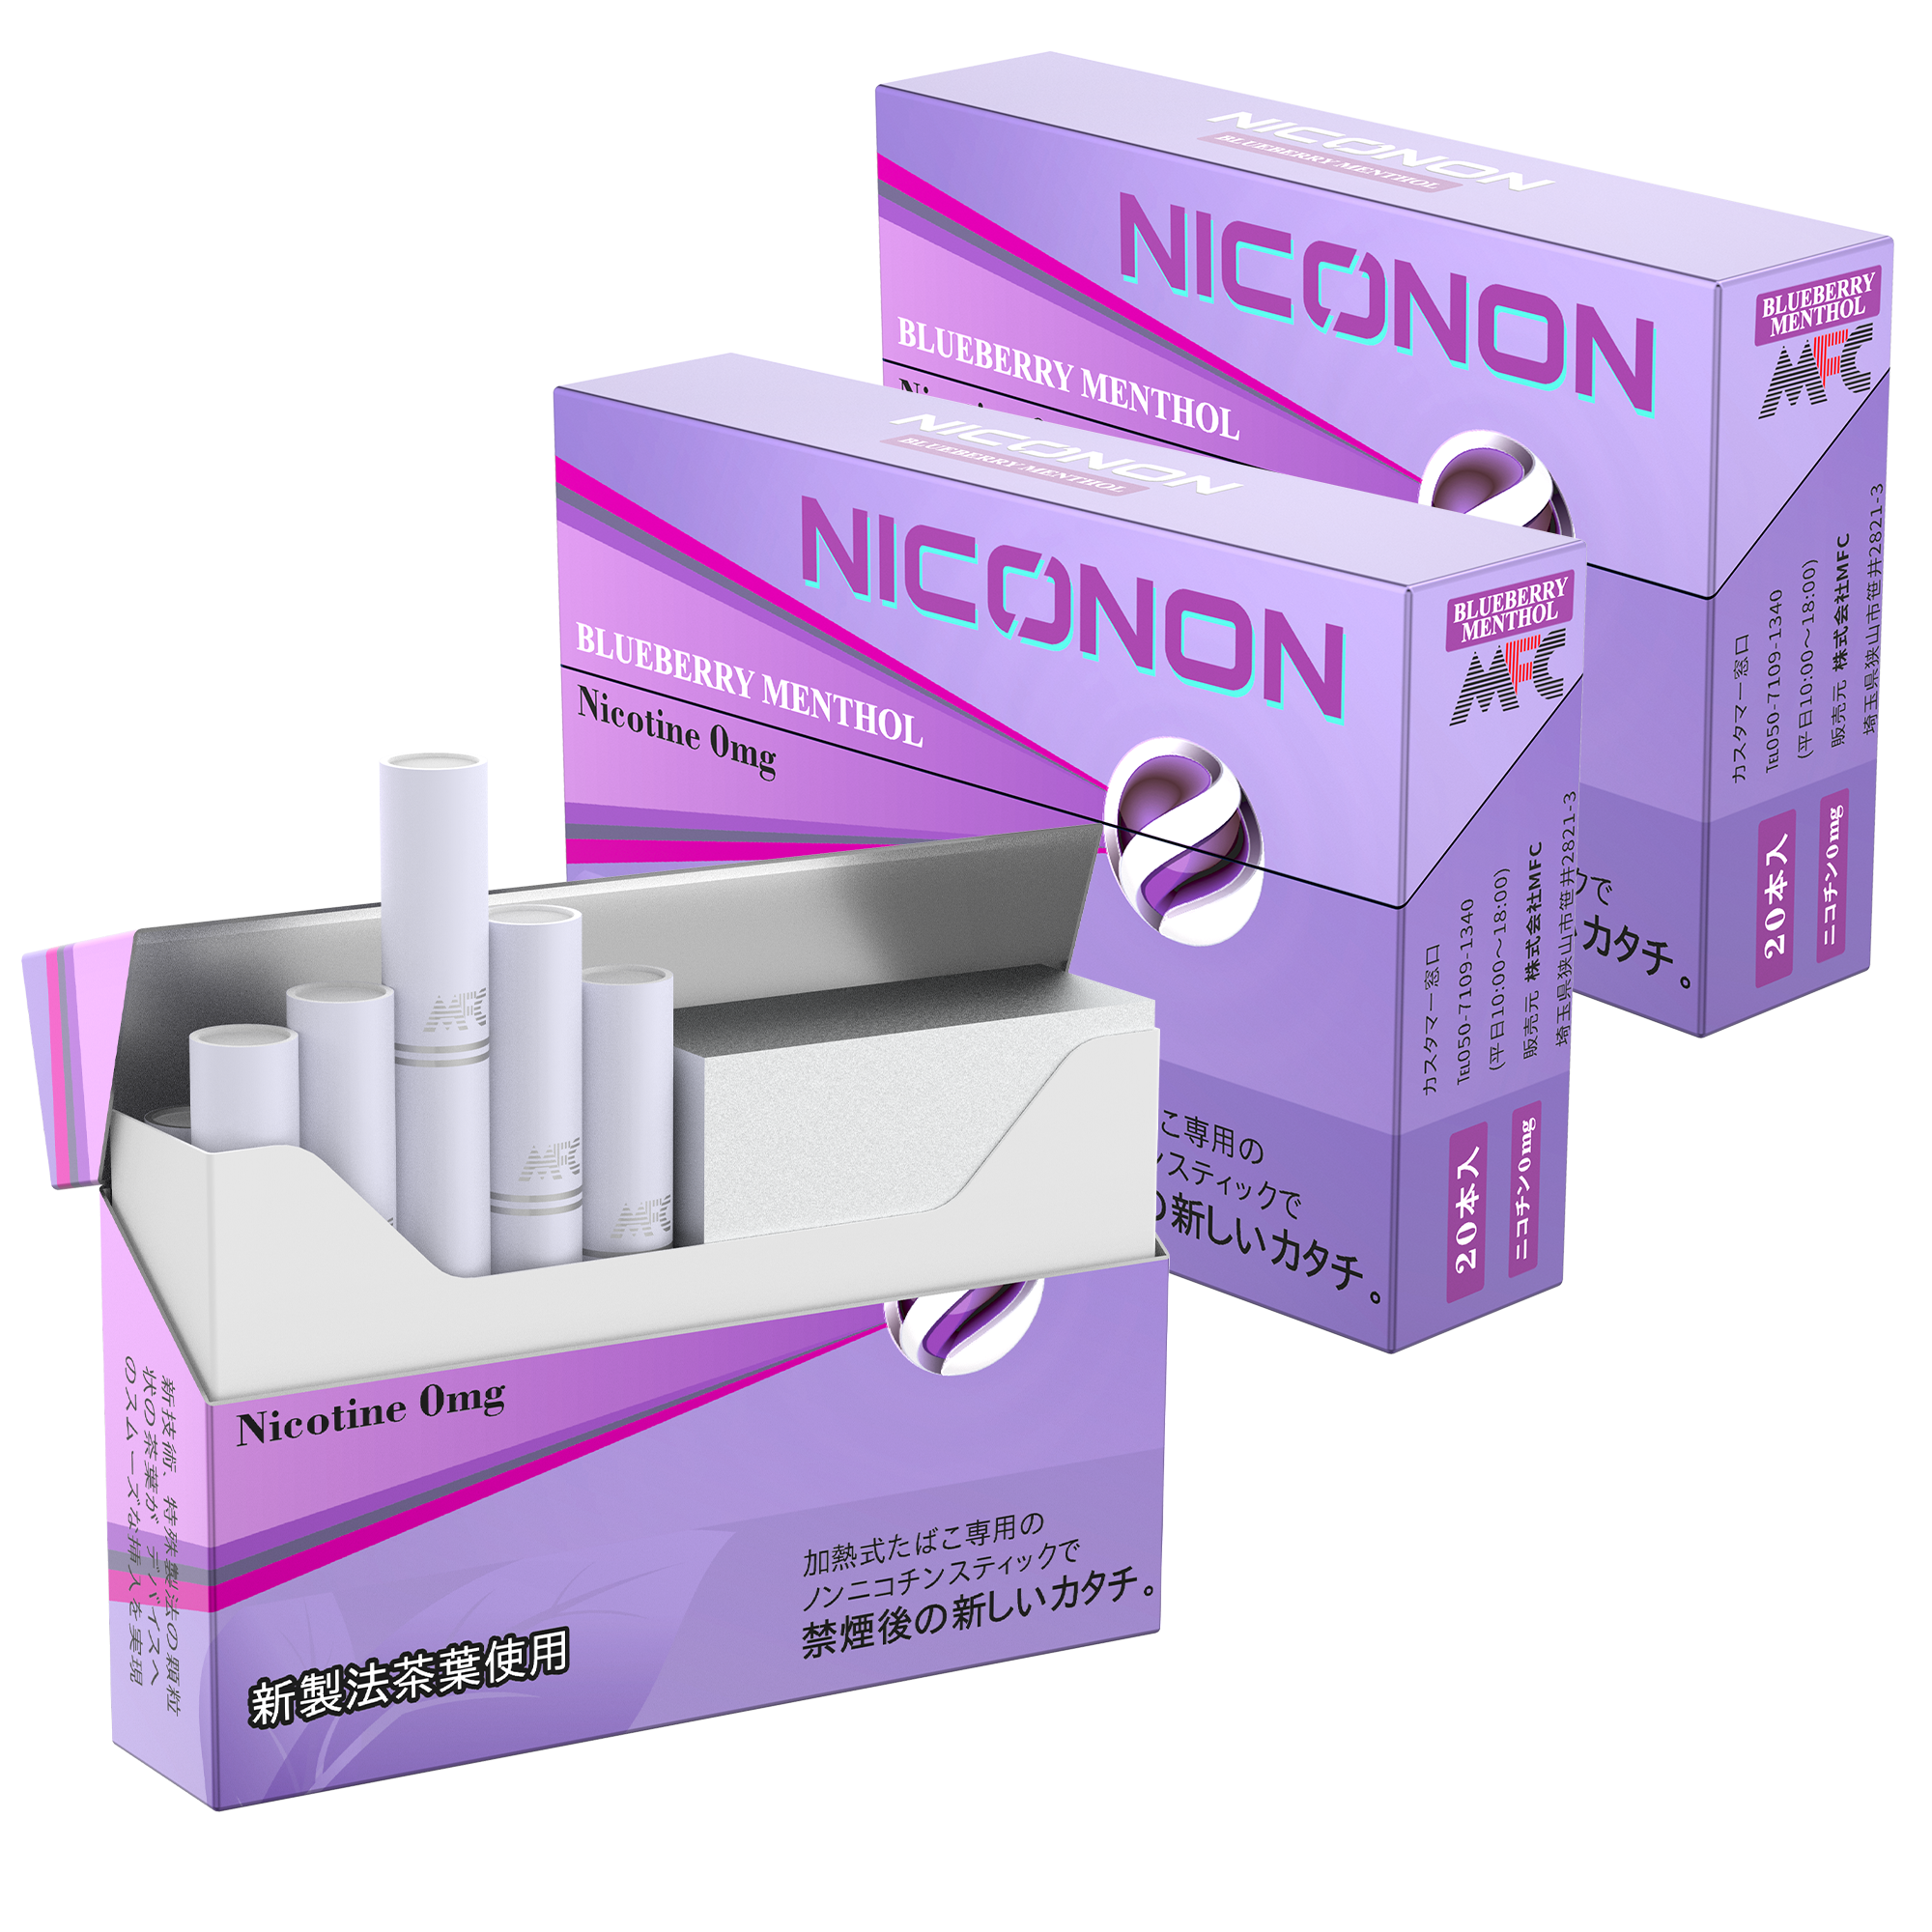 うまさで定評の加熱式たばこデバイス用ニコチンゼロスティック Niconon ニコノン に新定番 ブルーベリーメンソール 追加 株式会社晴和のプレスリリース